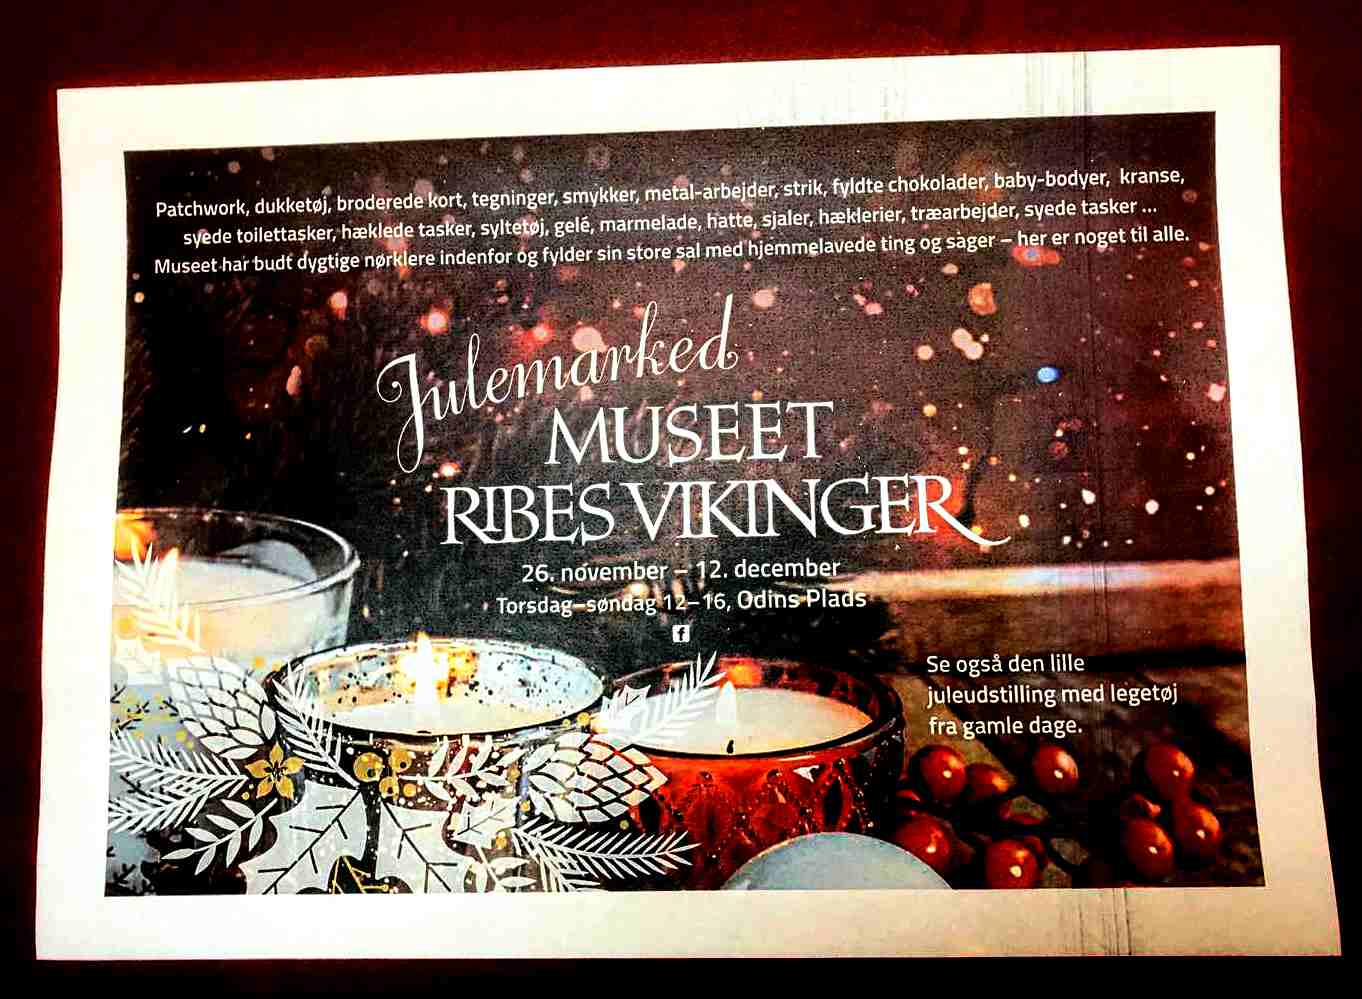 Uartig Galaxy Breddegrad Ribes Vikinger tilbyder Marked, juletræ og Nissemor med temaet gamle  legesager - Ryk Ind